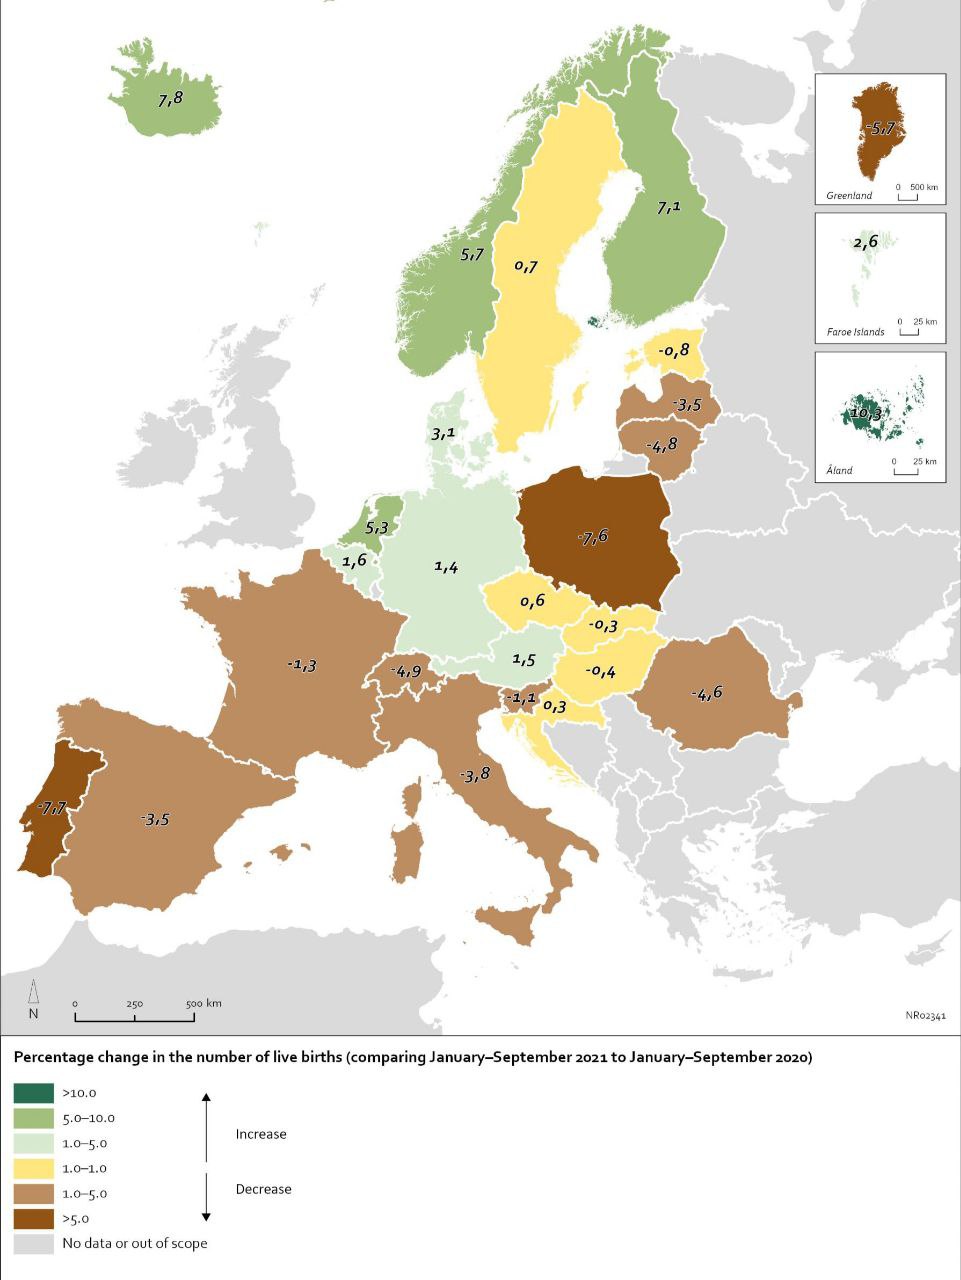 Zmiana liczby urodzeń w Europie, 2020-2021